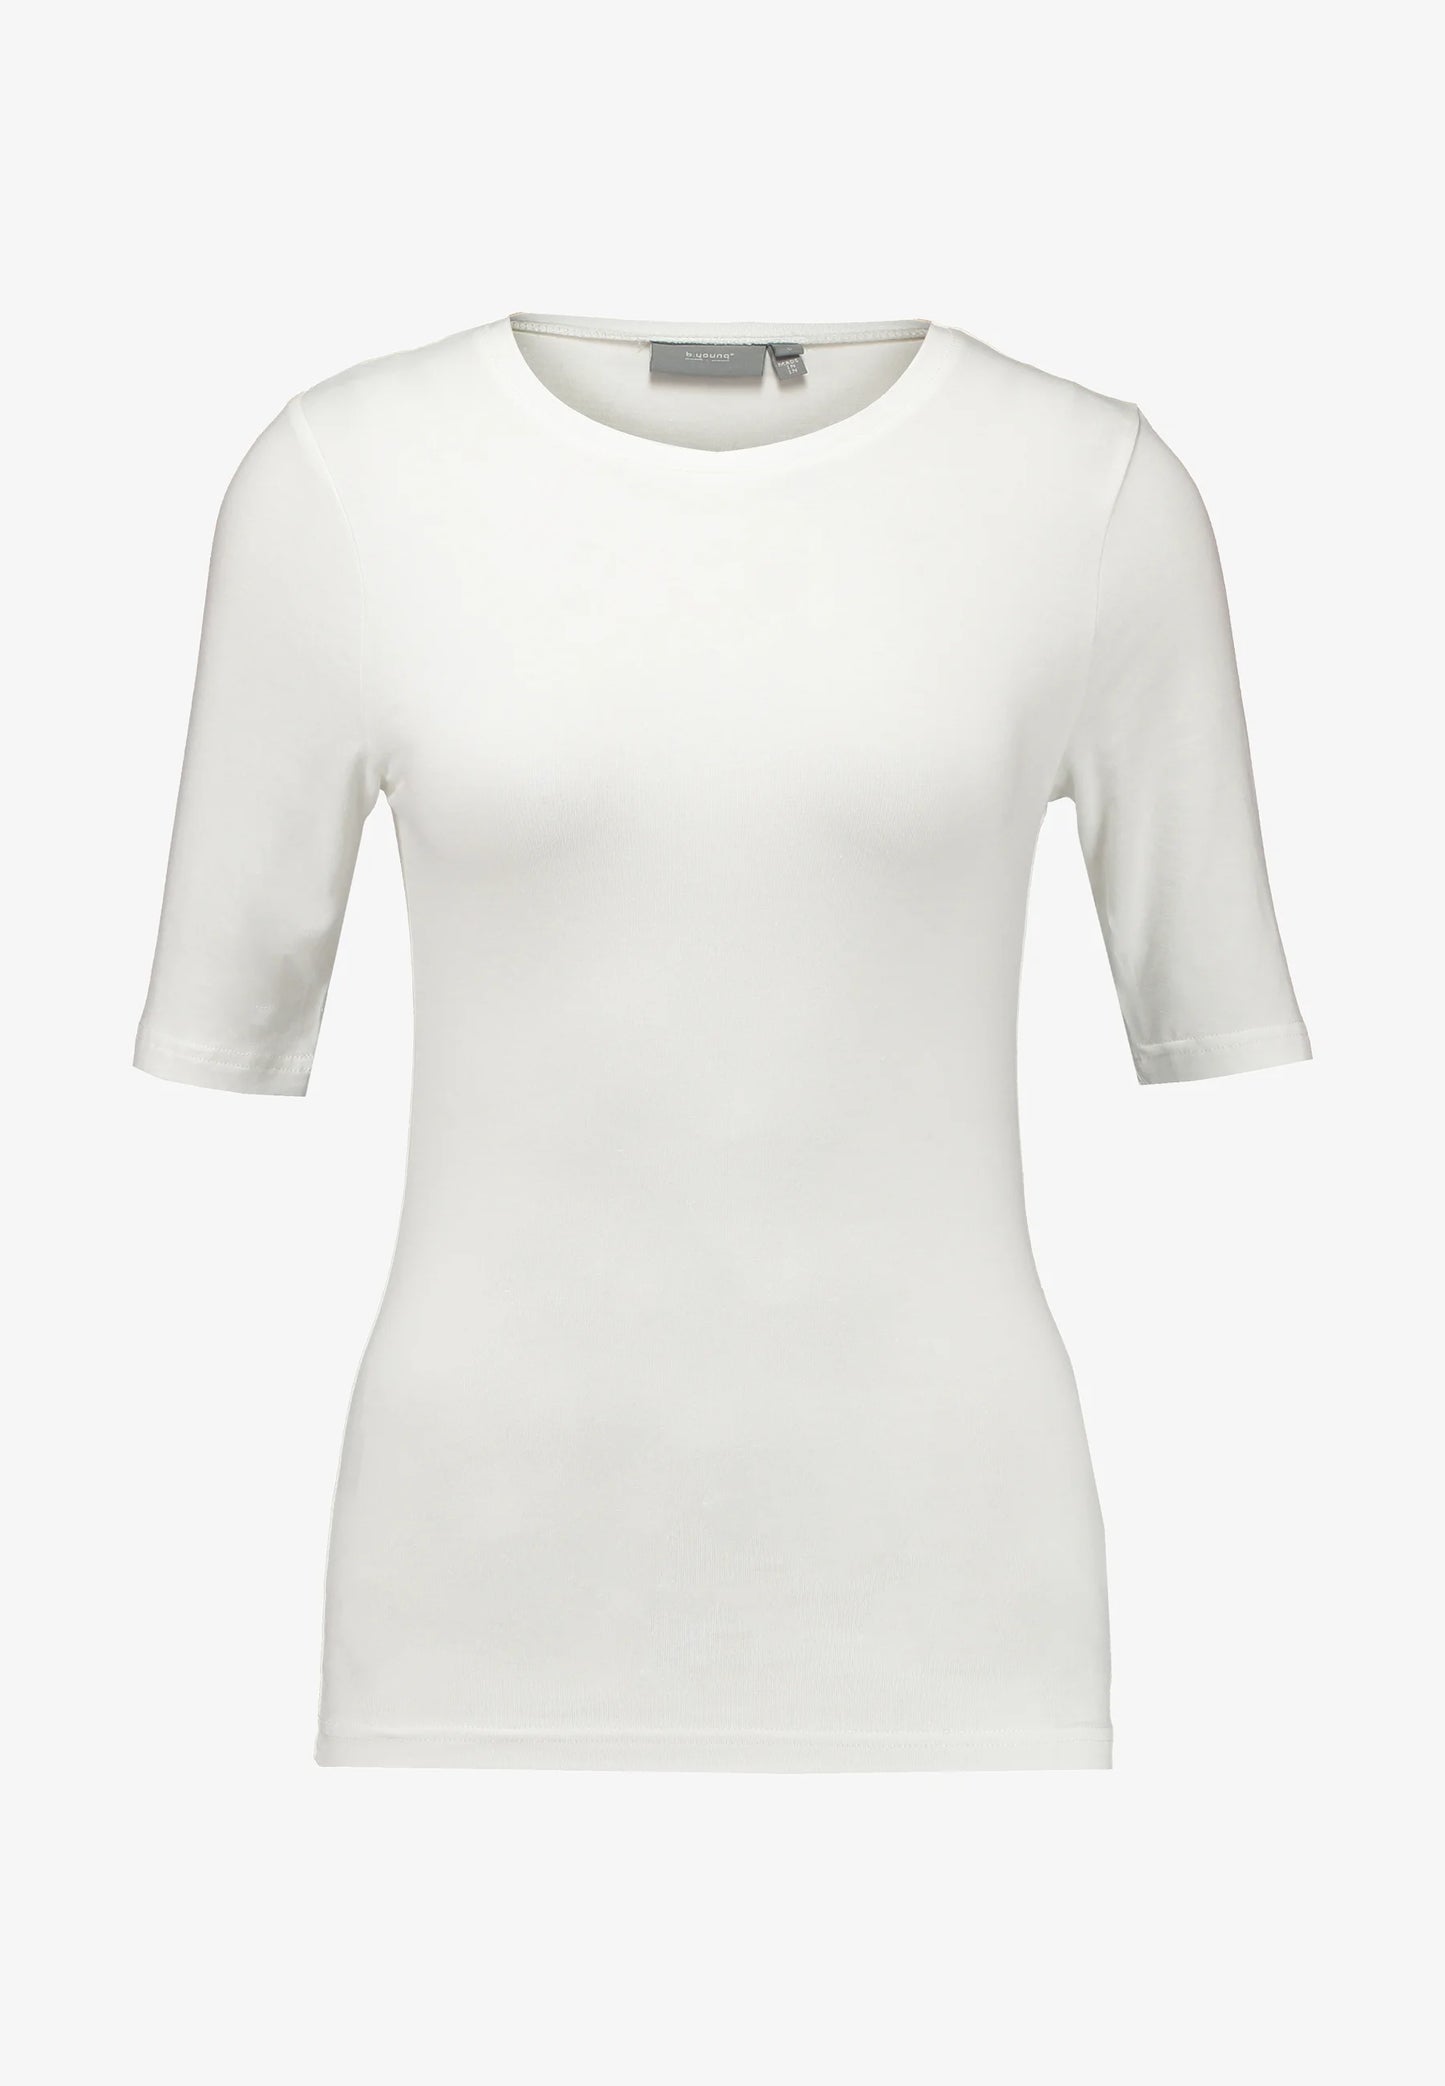 Camiseta básica blanca AVA